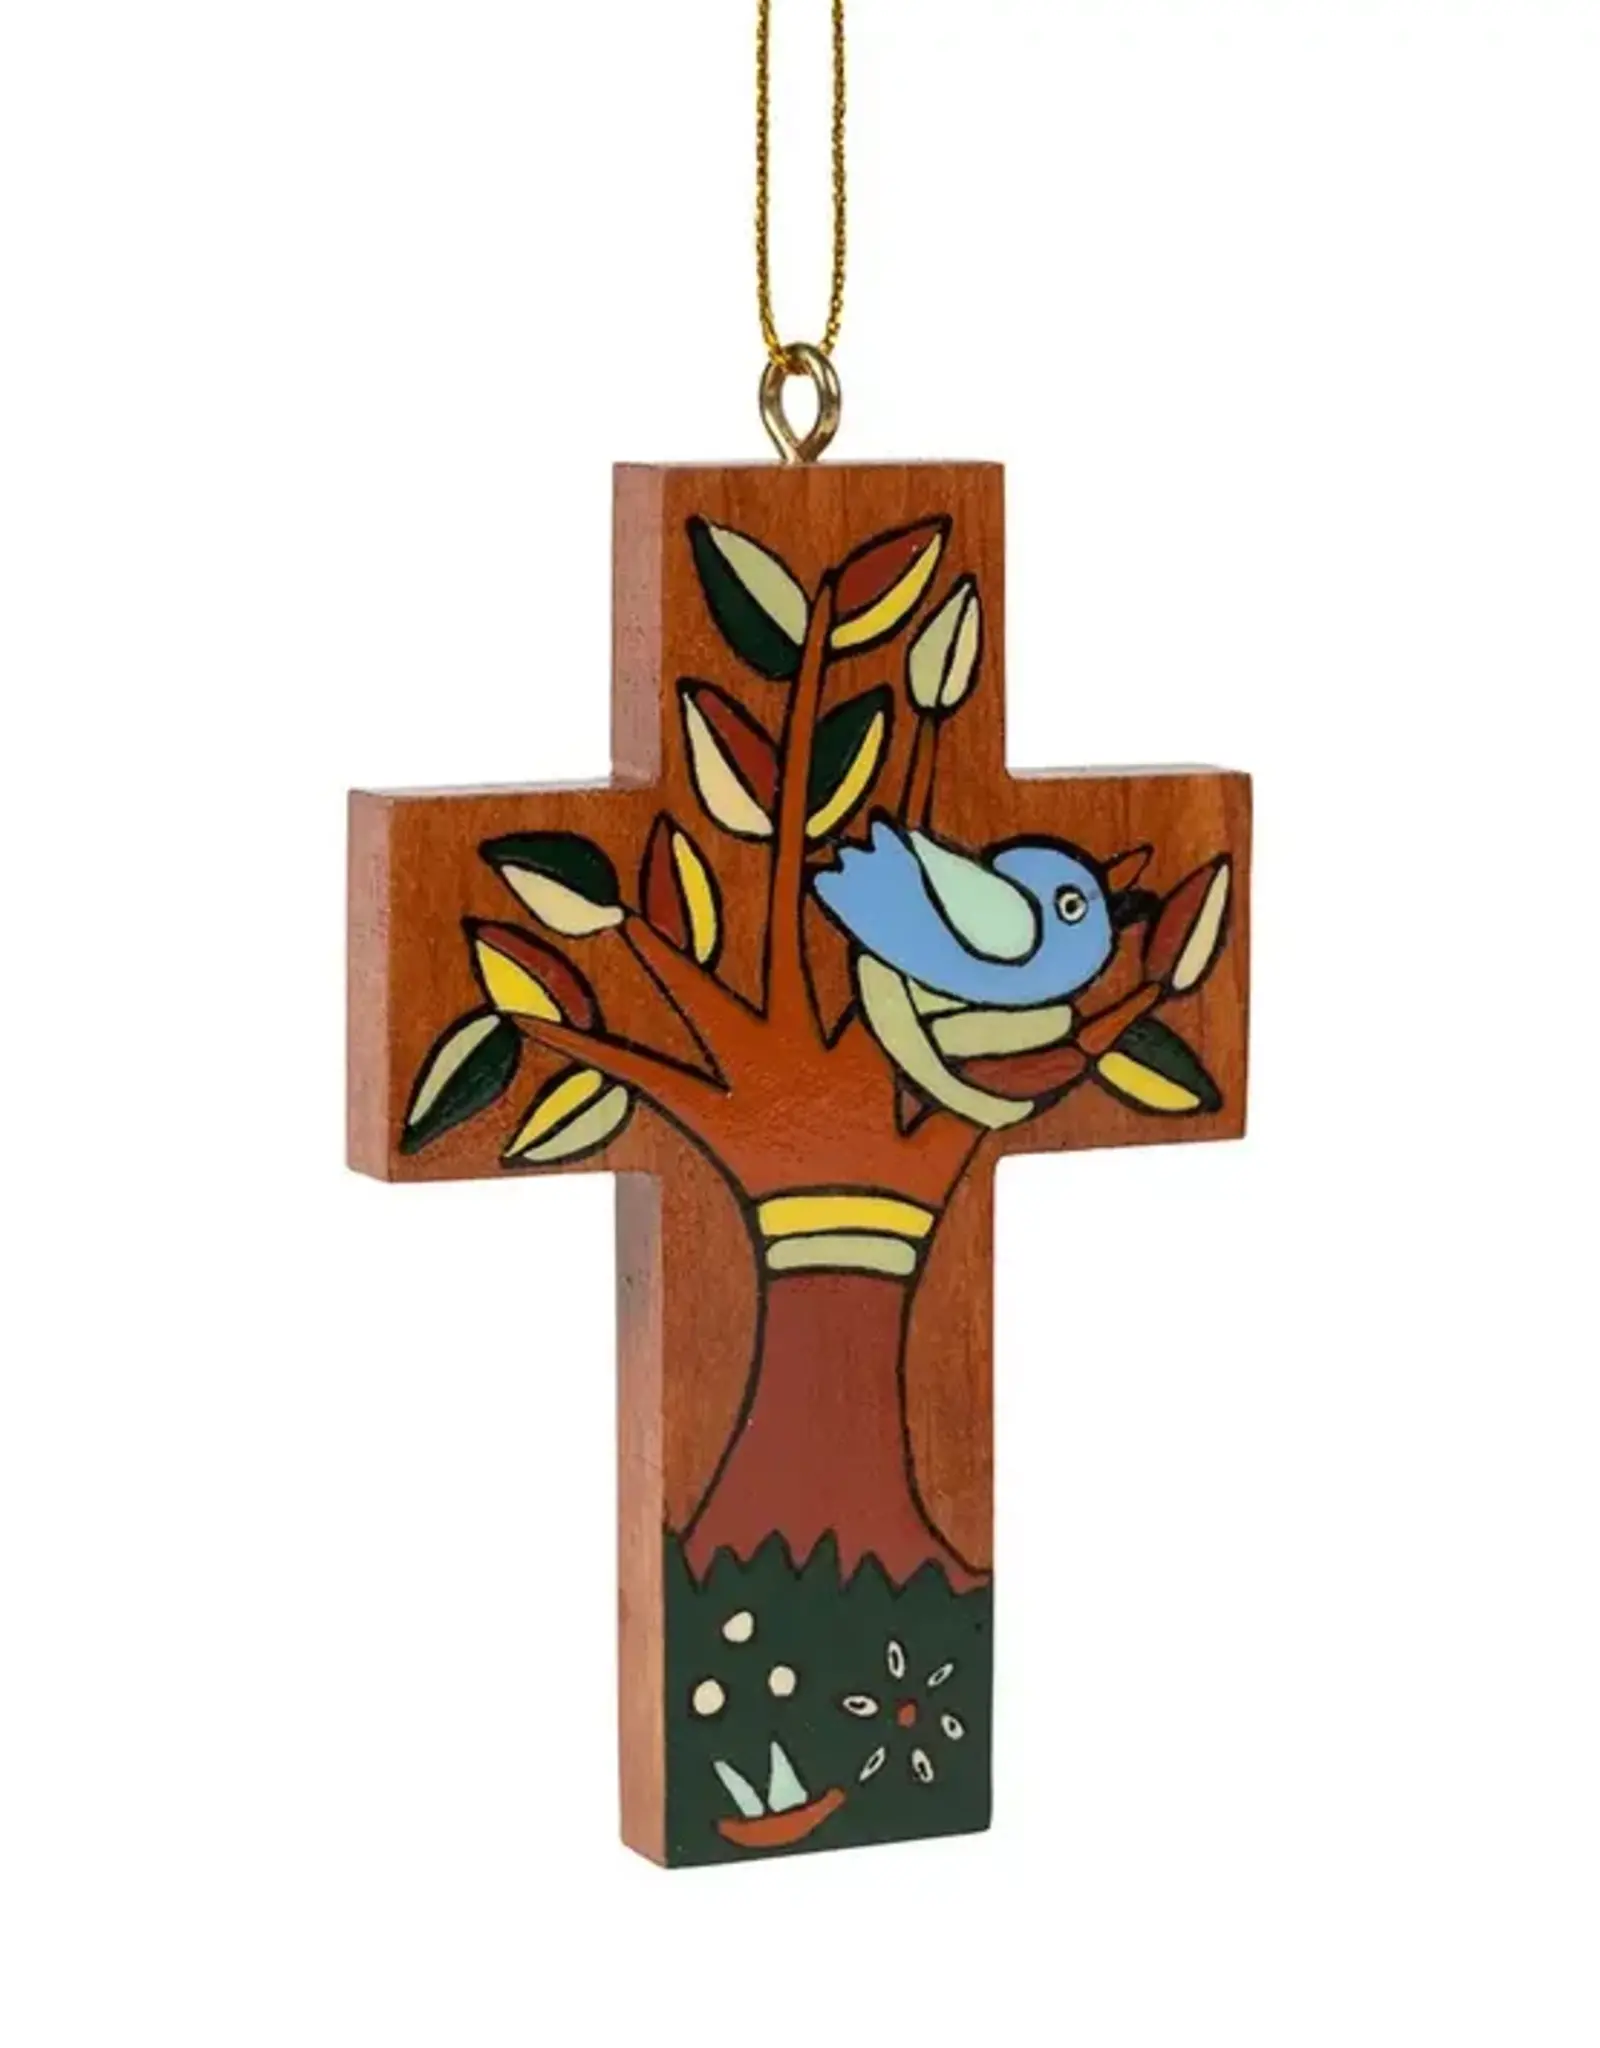 El Salvador Ornament Tree Cross - El Salvador